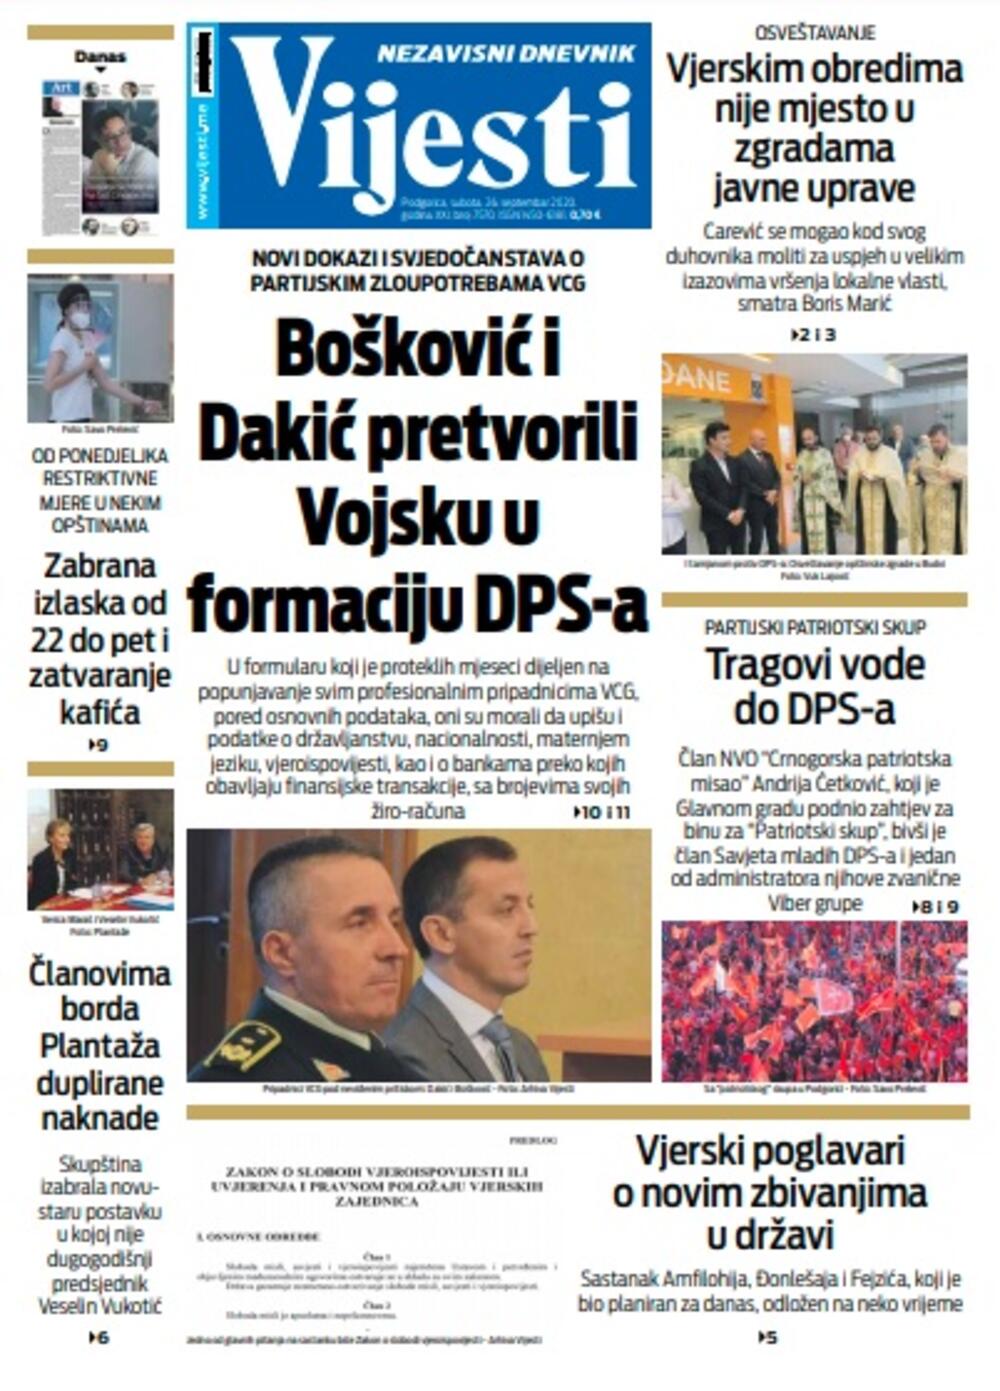 Naslovna strana "Vijesti" za subotu 26. septembar 2020. godine, Foto: Vijesti